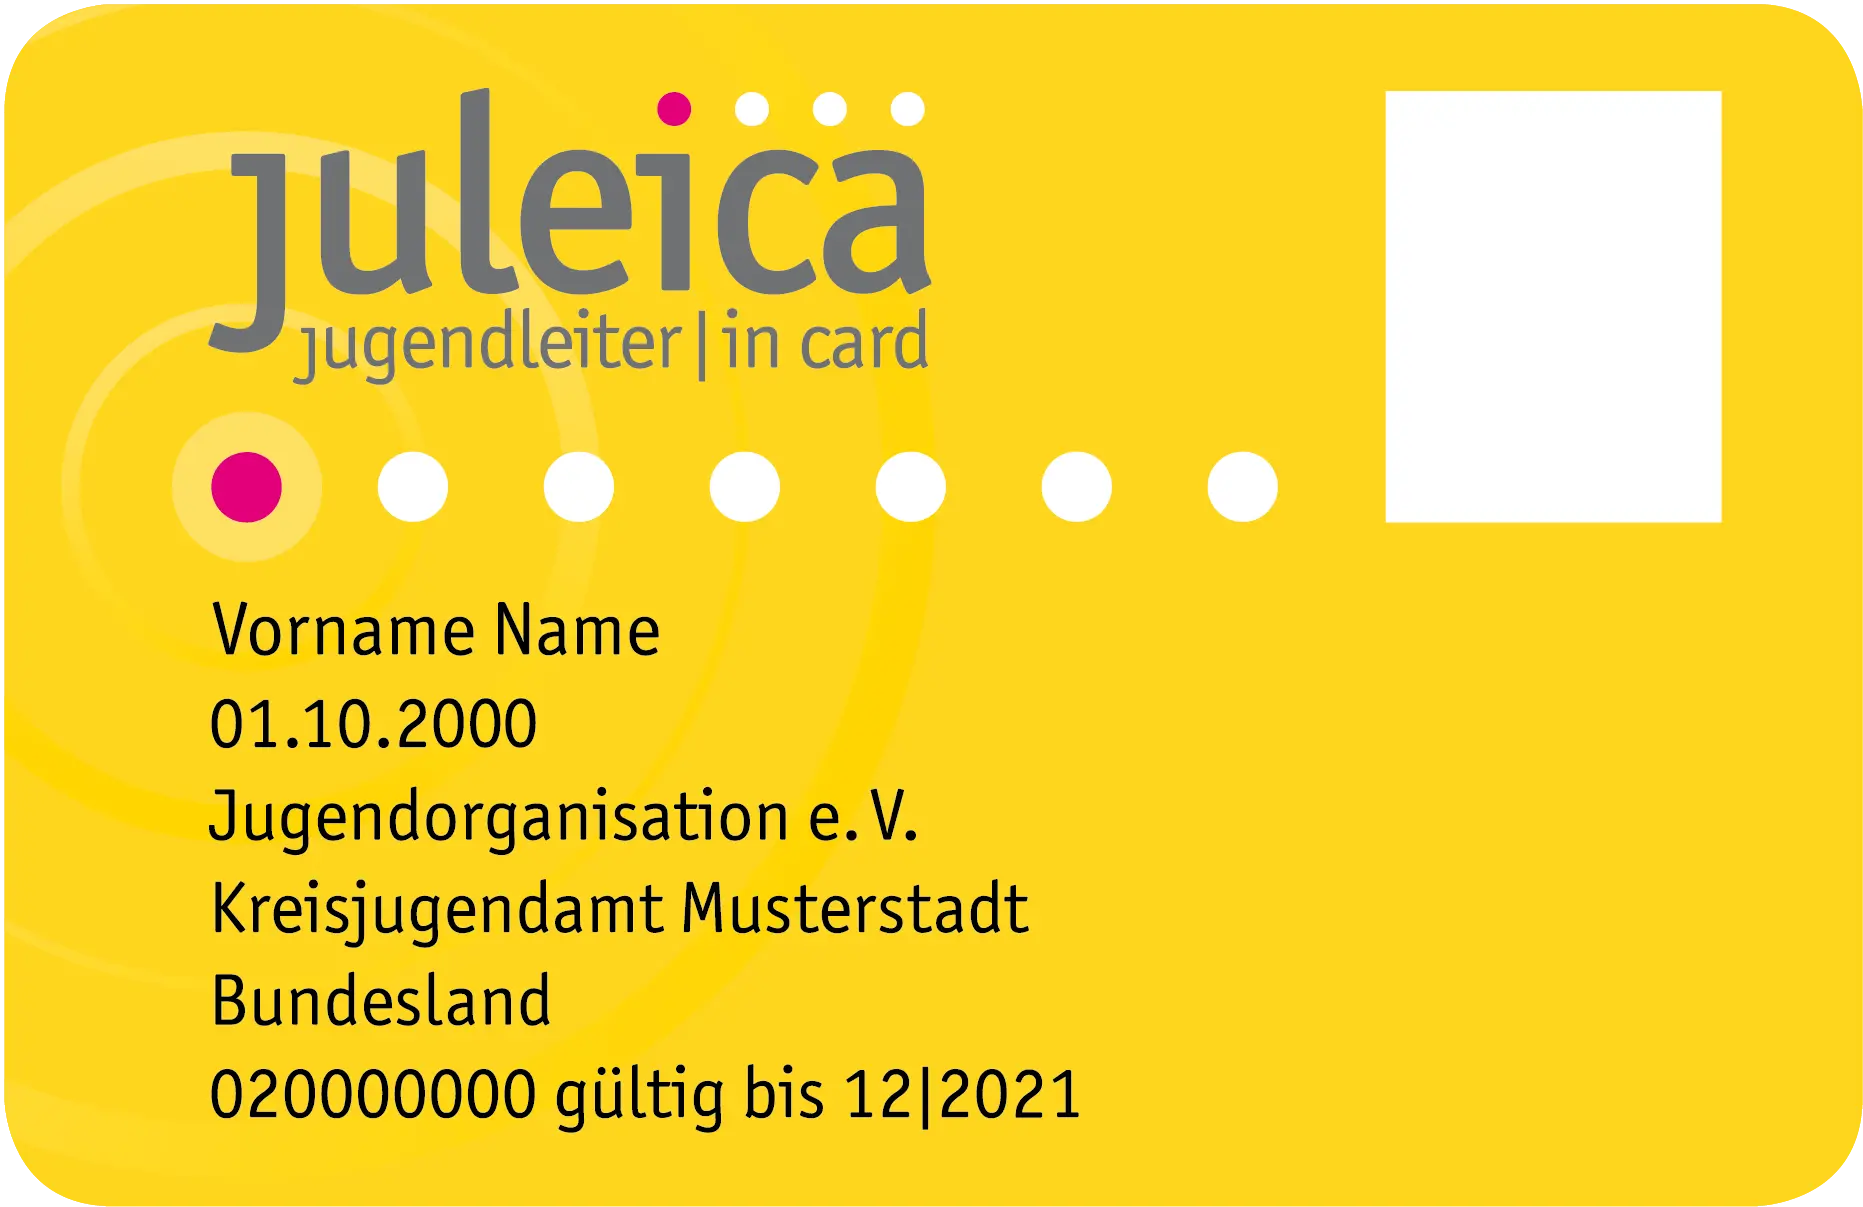 Neutralisierte Version der Jugendleiter-Card Juleica (ohne Foto & Namen)